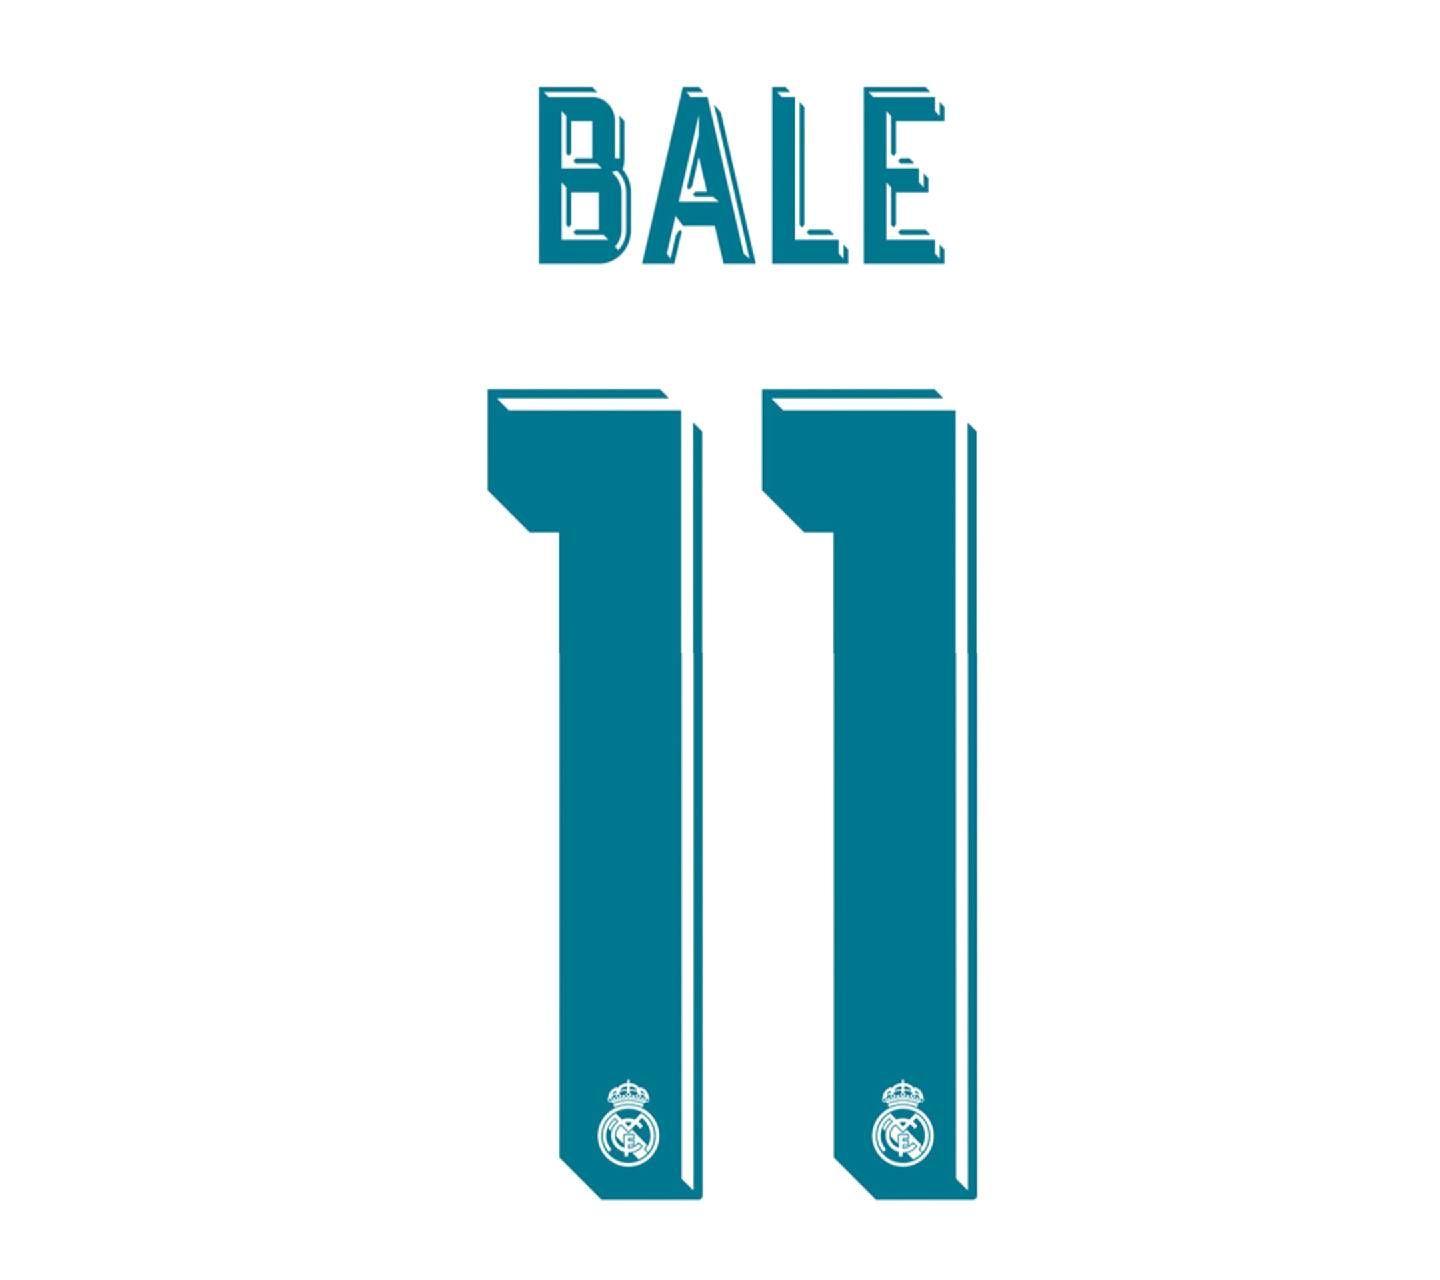 Bale 2017 2018 Wallpaper